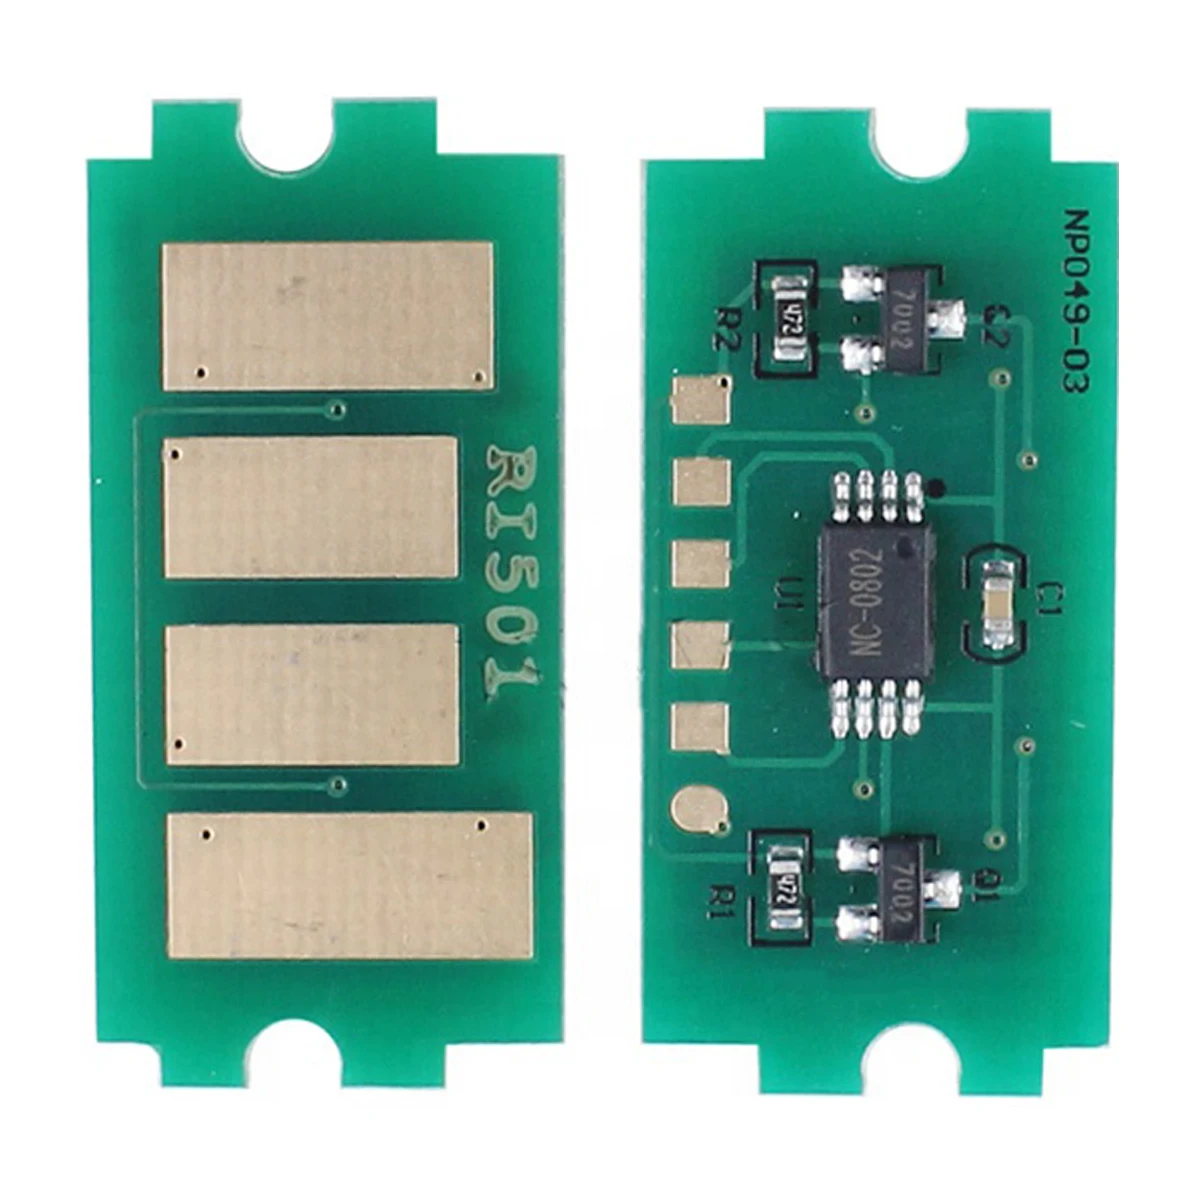 

10pcs Reset Chip for Ricoh SP5300 SP5310 MP501 MP601 SP5300DN SP5310DN MP501SPF MP601SPF MP 501SPF MP601SPF Toner Cartridge Chip